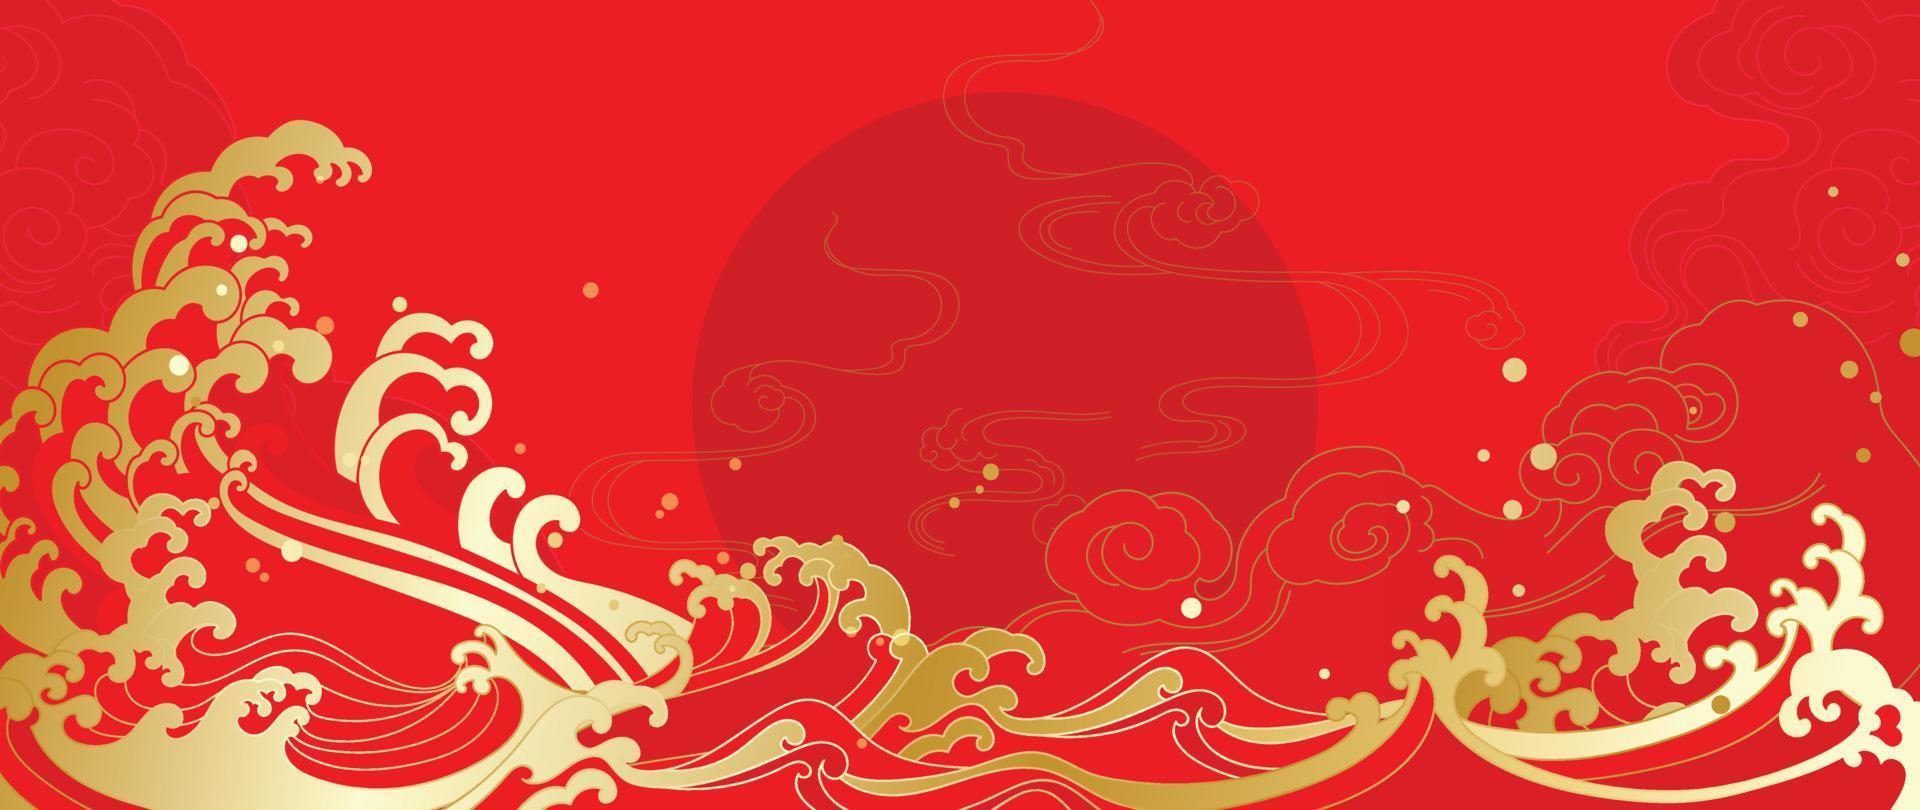 vetor de fundo padrão de estilo de luxo oriental japonês e chinês. arte de linha de estilo de onda oriental de ouro decorativo com fundo vermelho padrão chinês. ilustração de design para papel de parede, cartão, pôster.